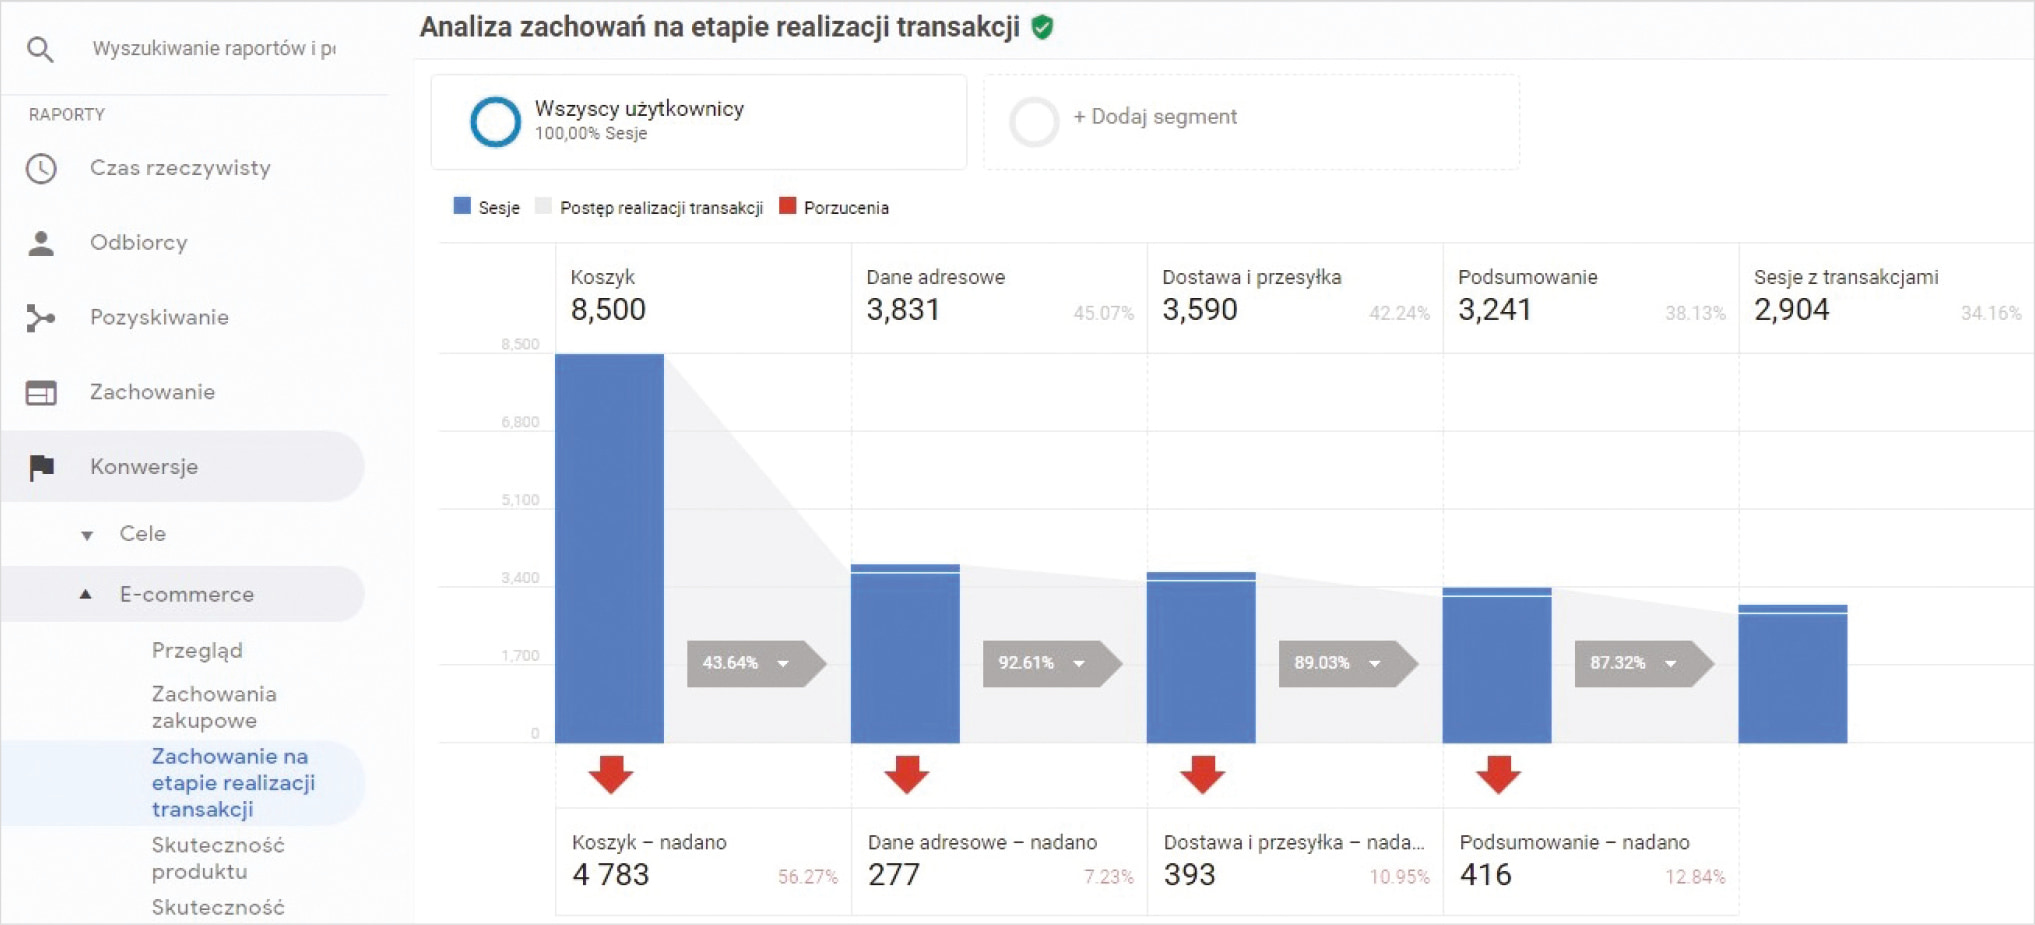 Analiza zachowań użytkowników na etapie realizacji transakcji – widok z Google Analytics 2